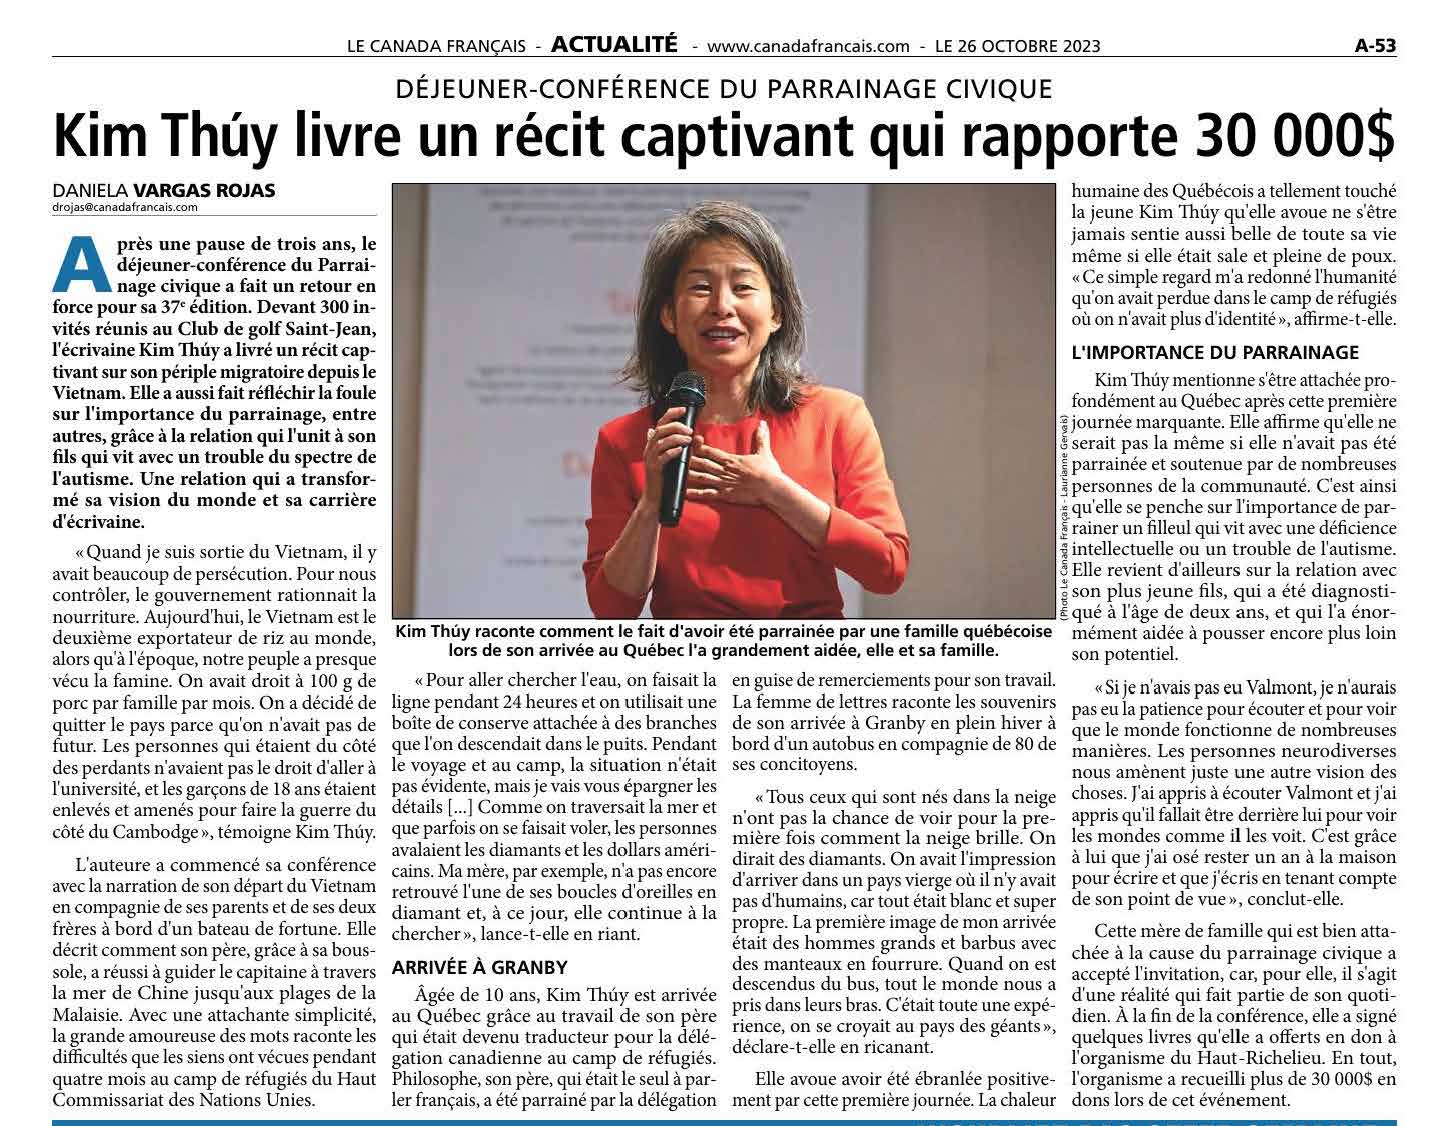 Article du Journal Le Canada Français Kim Thuy livre un récit captivant qui rapporte 30 000 $